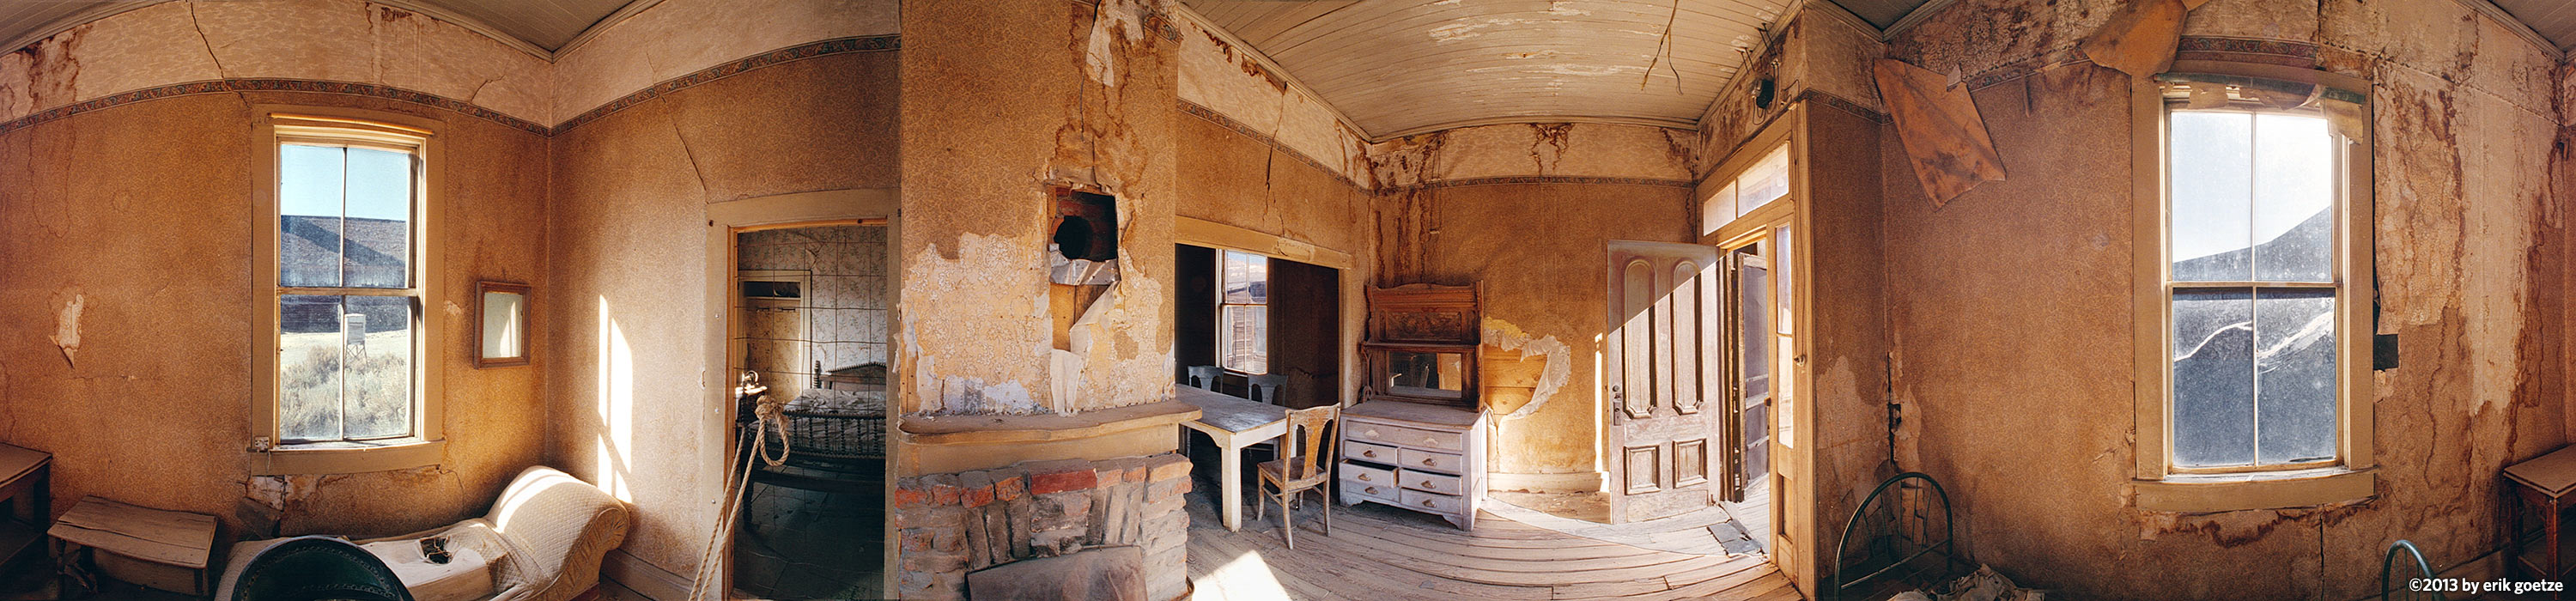 Miner cabin in Bodie, California